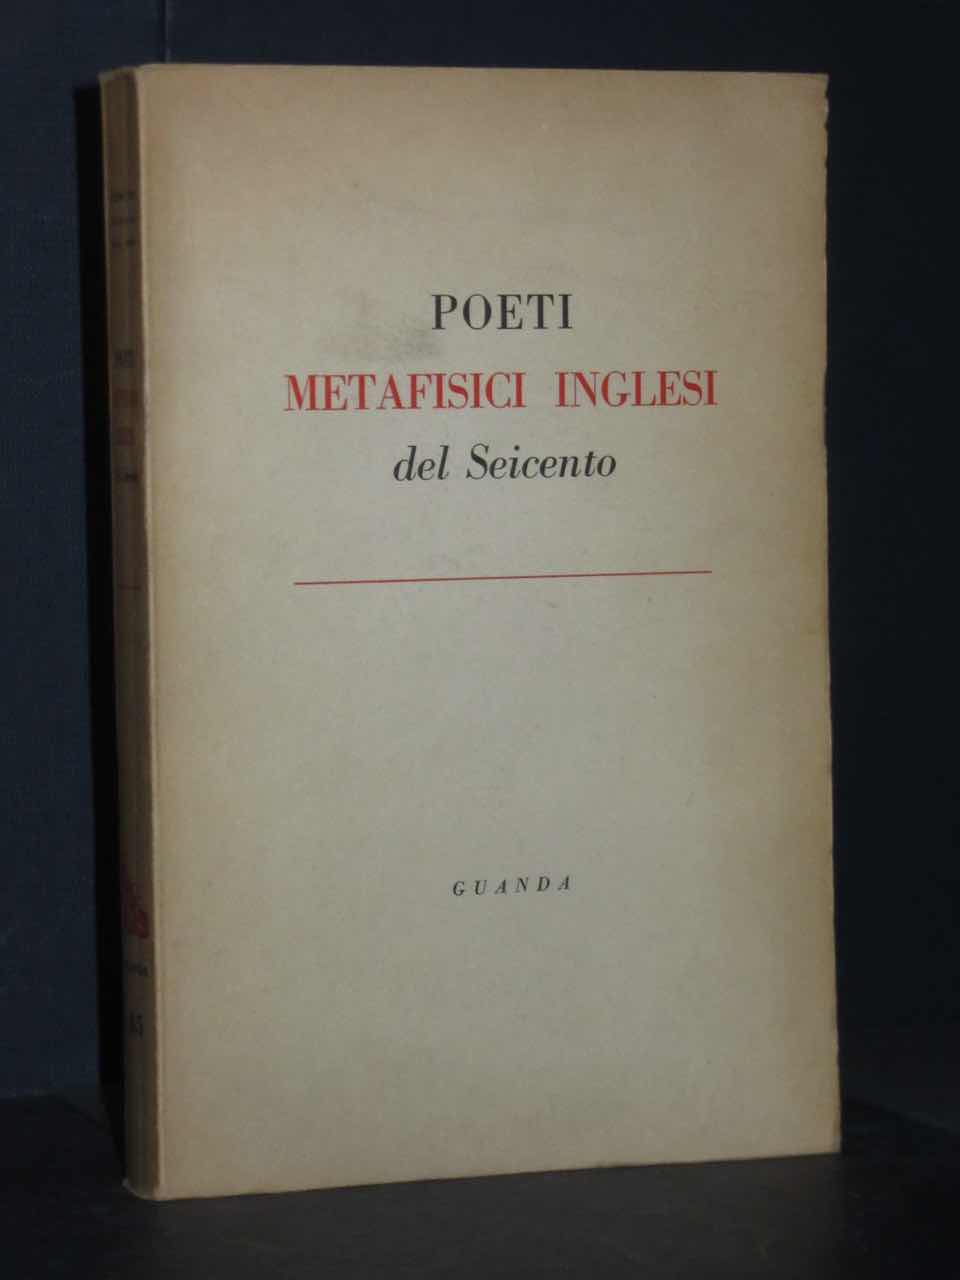 R. Sanesi Poeti metafisici inglesi del Seicento Guanda, Fenice 45 1961 eBay